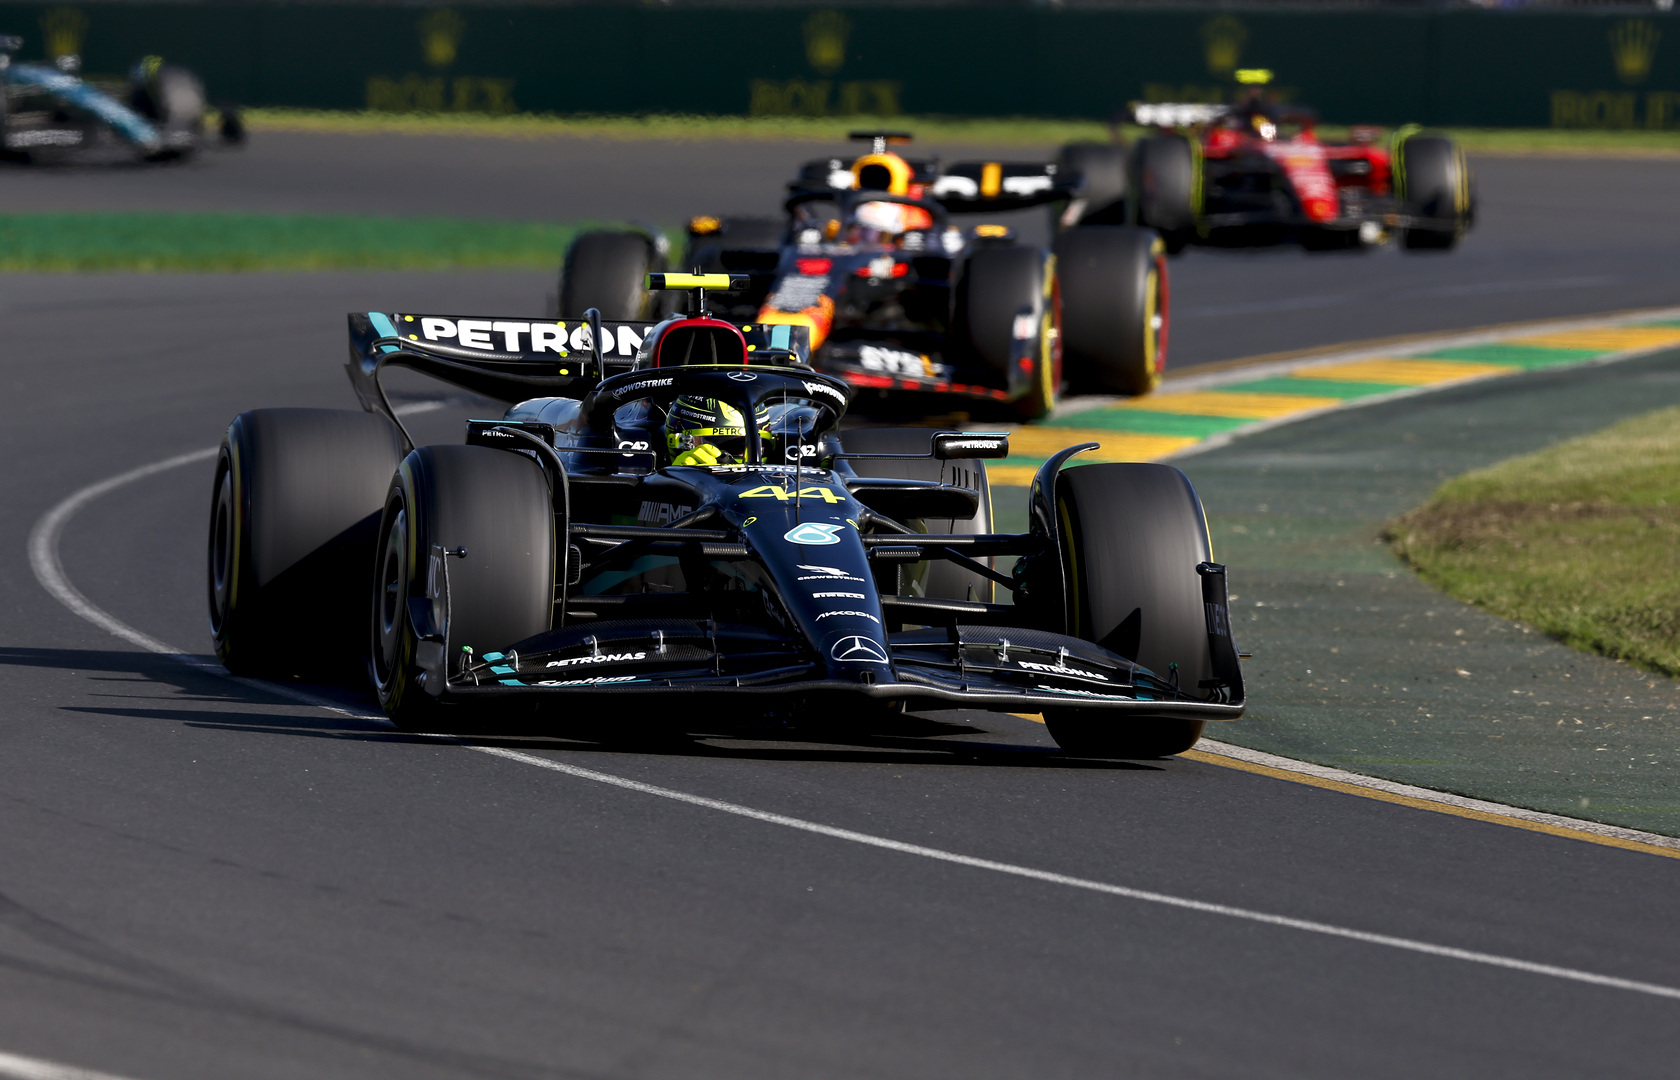 Mercedes modifie le volant d'Hamilton après l'incident de Bakou